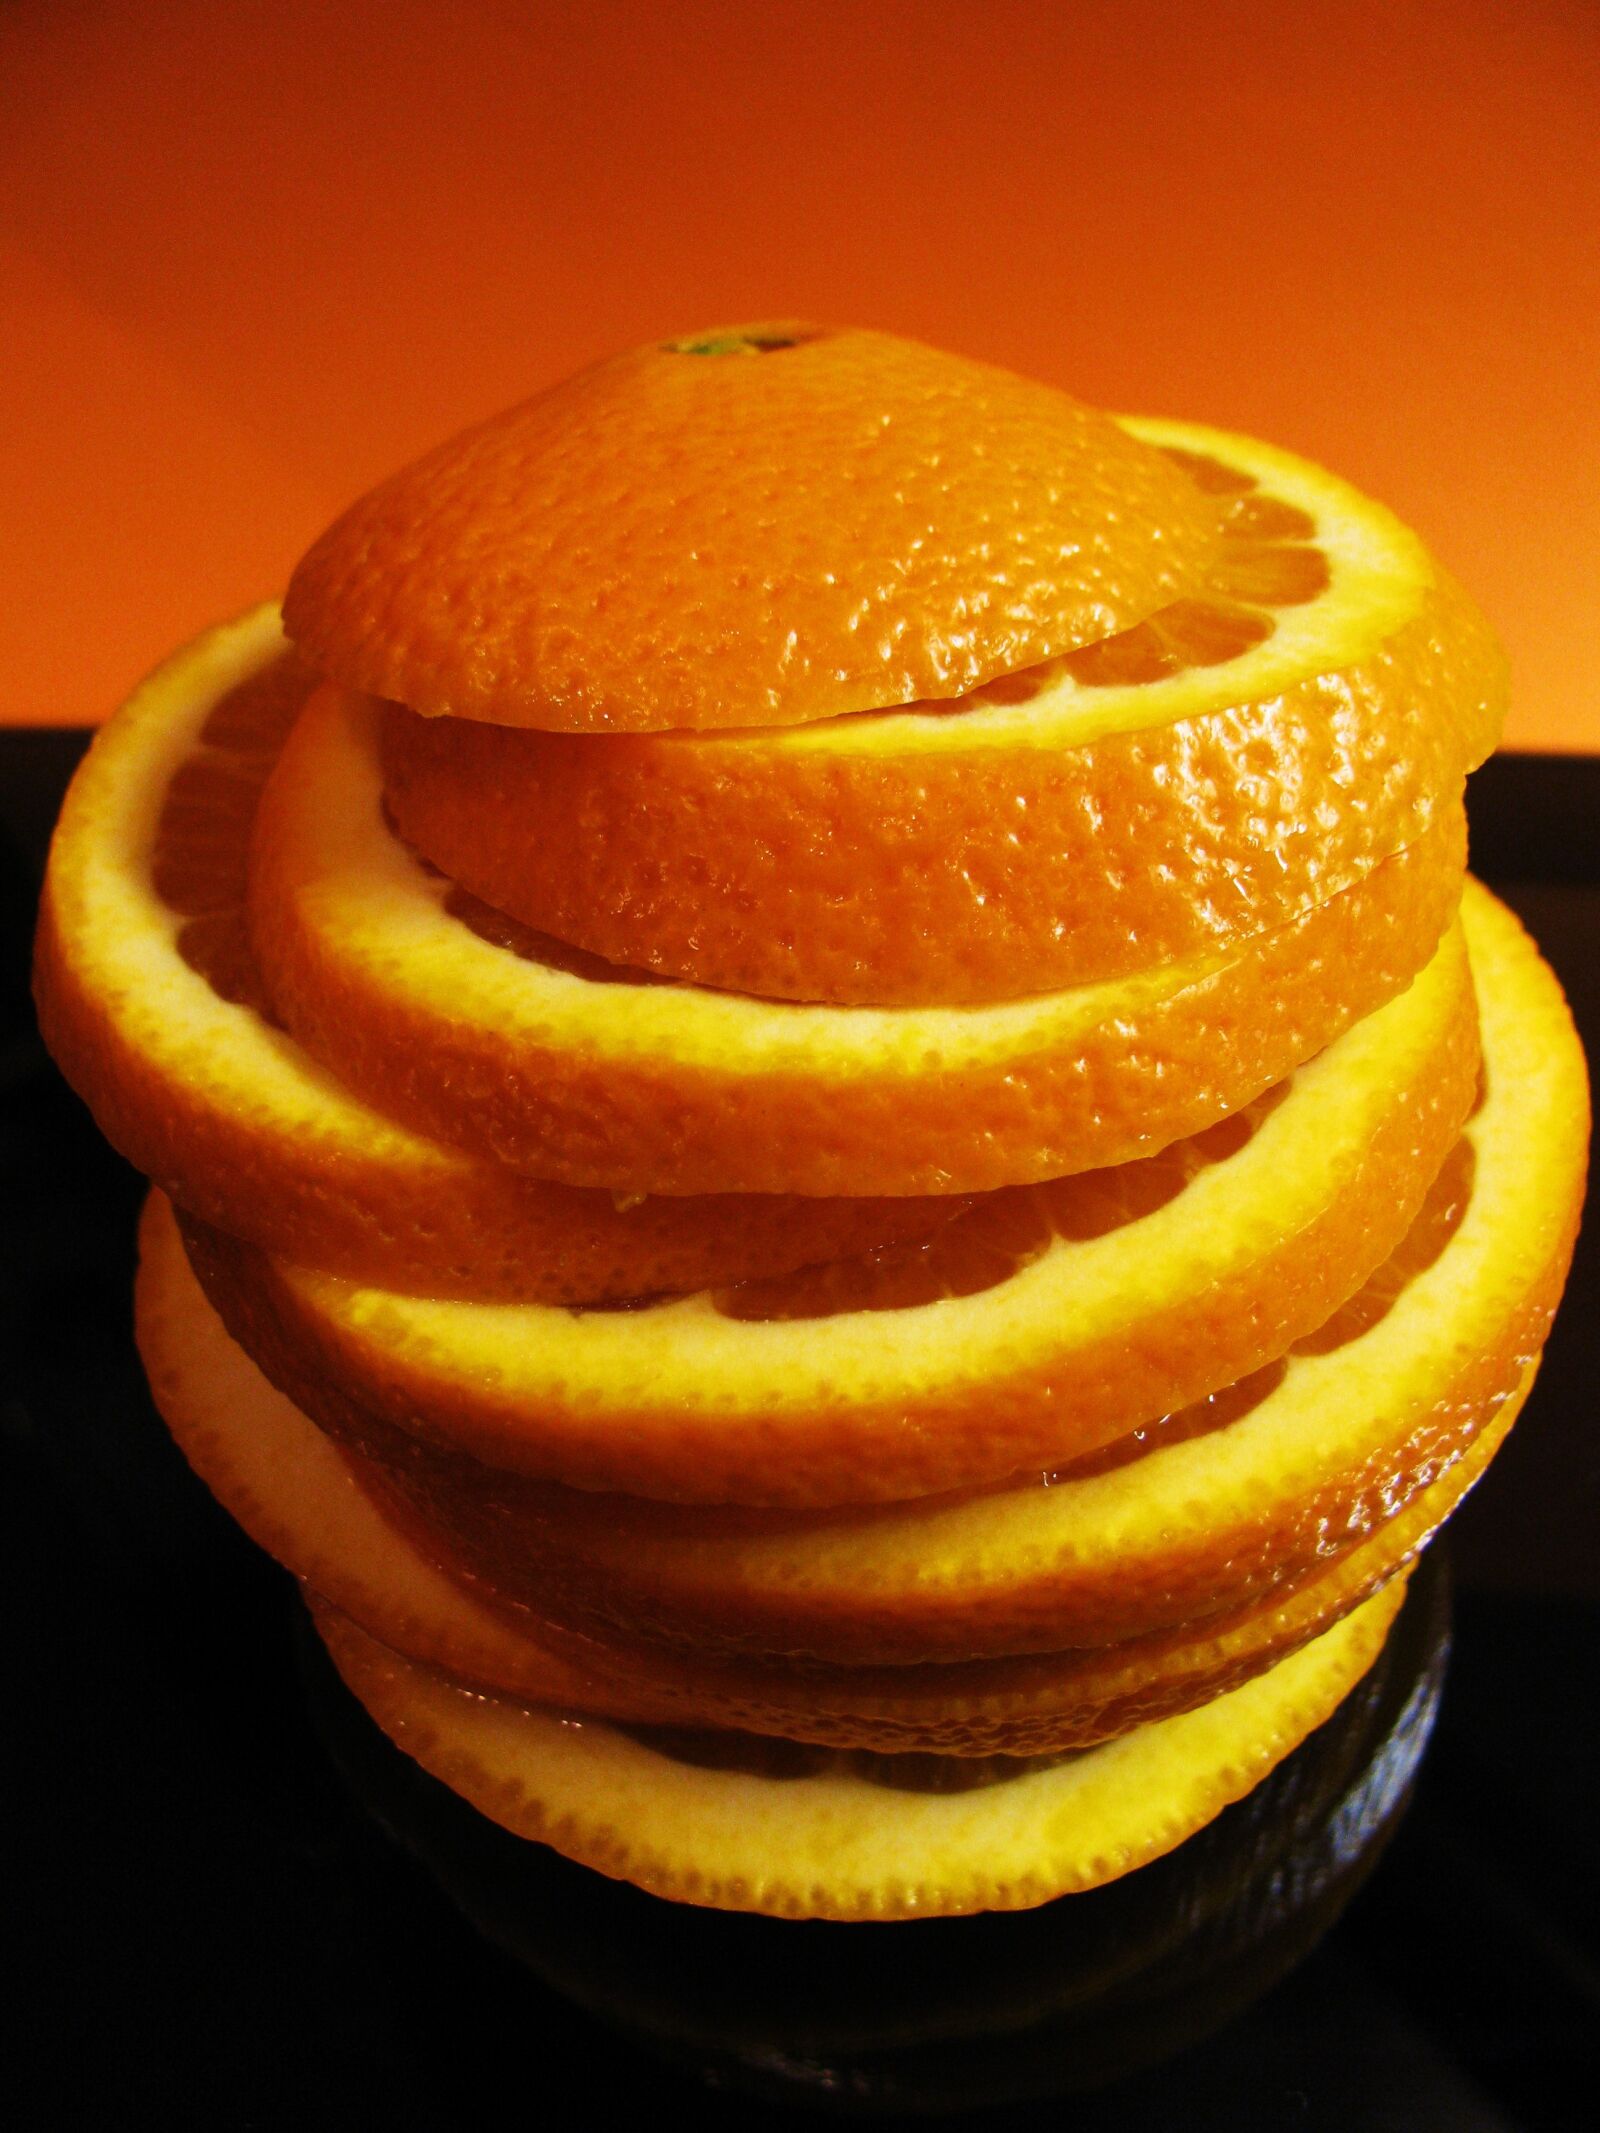 Canon PowerShot SX110 IS sample photo. Orange slices, fruit, orange photography